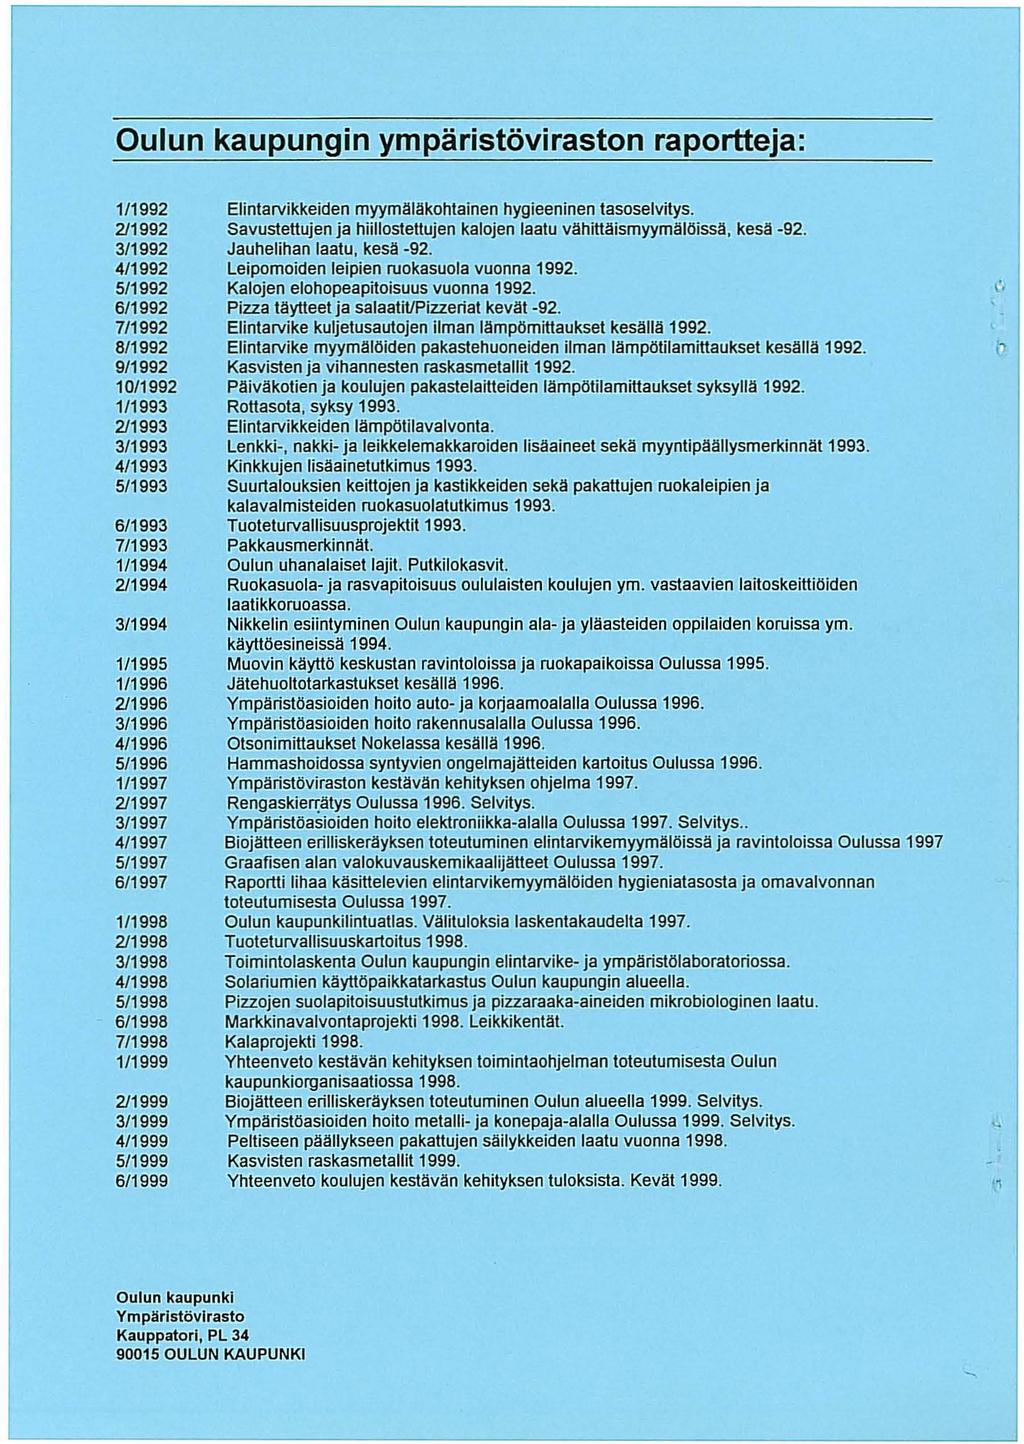 Oulun kaupungin ympäristöviraston raportteja: 1/1992 2/1992 3/1992 4/1992 5/1992 6/1992 7/1992 8/1992 9/1992 10/1992 1/1993 2/1993 3/1993 4/1993 5/1993 6/1993 7/1993 1/1994 2/1994 3/1994 1/1995